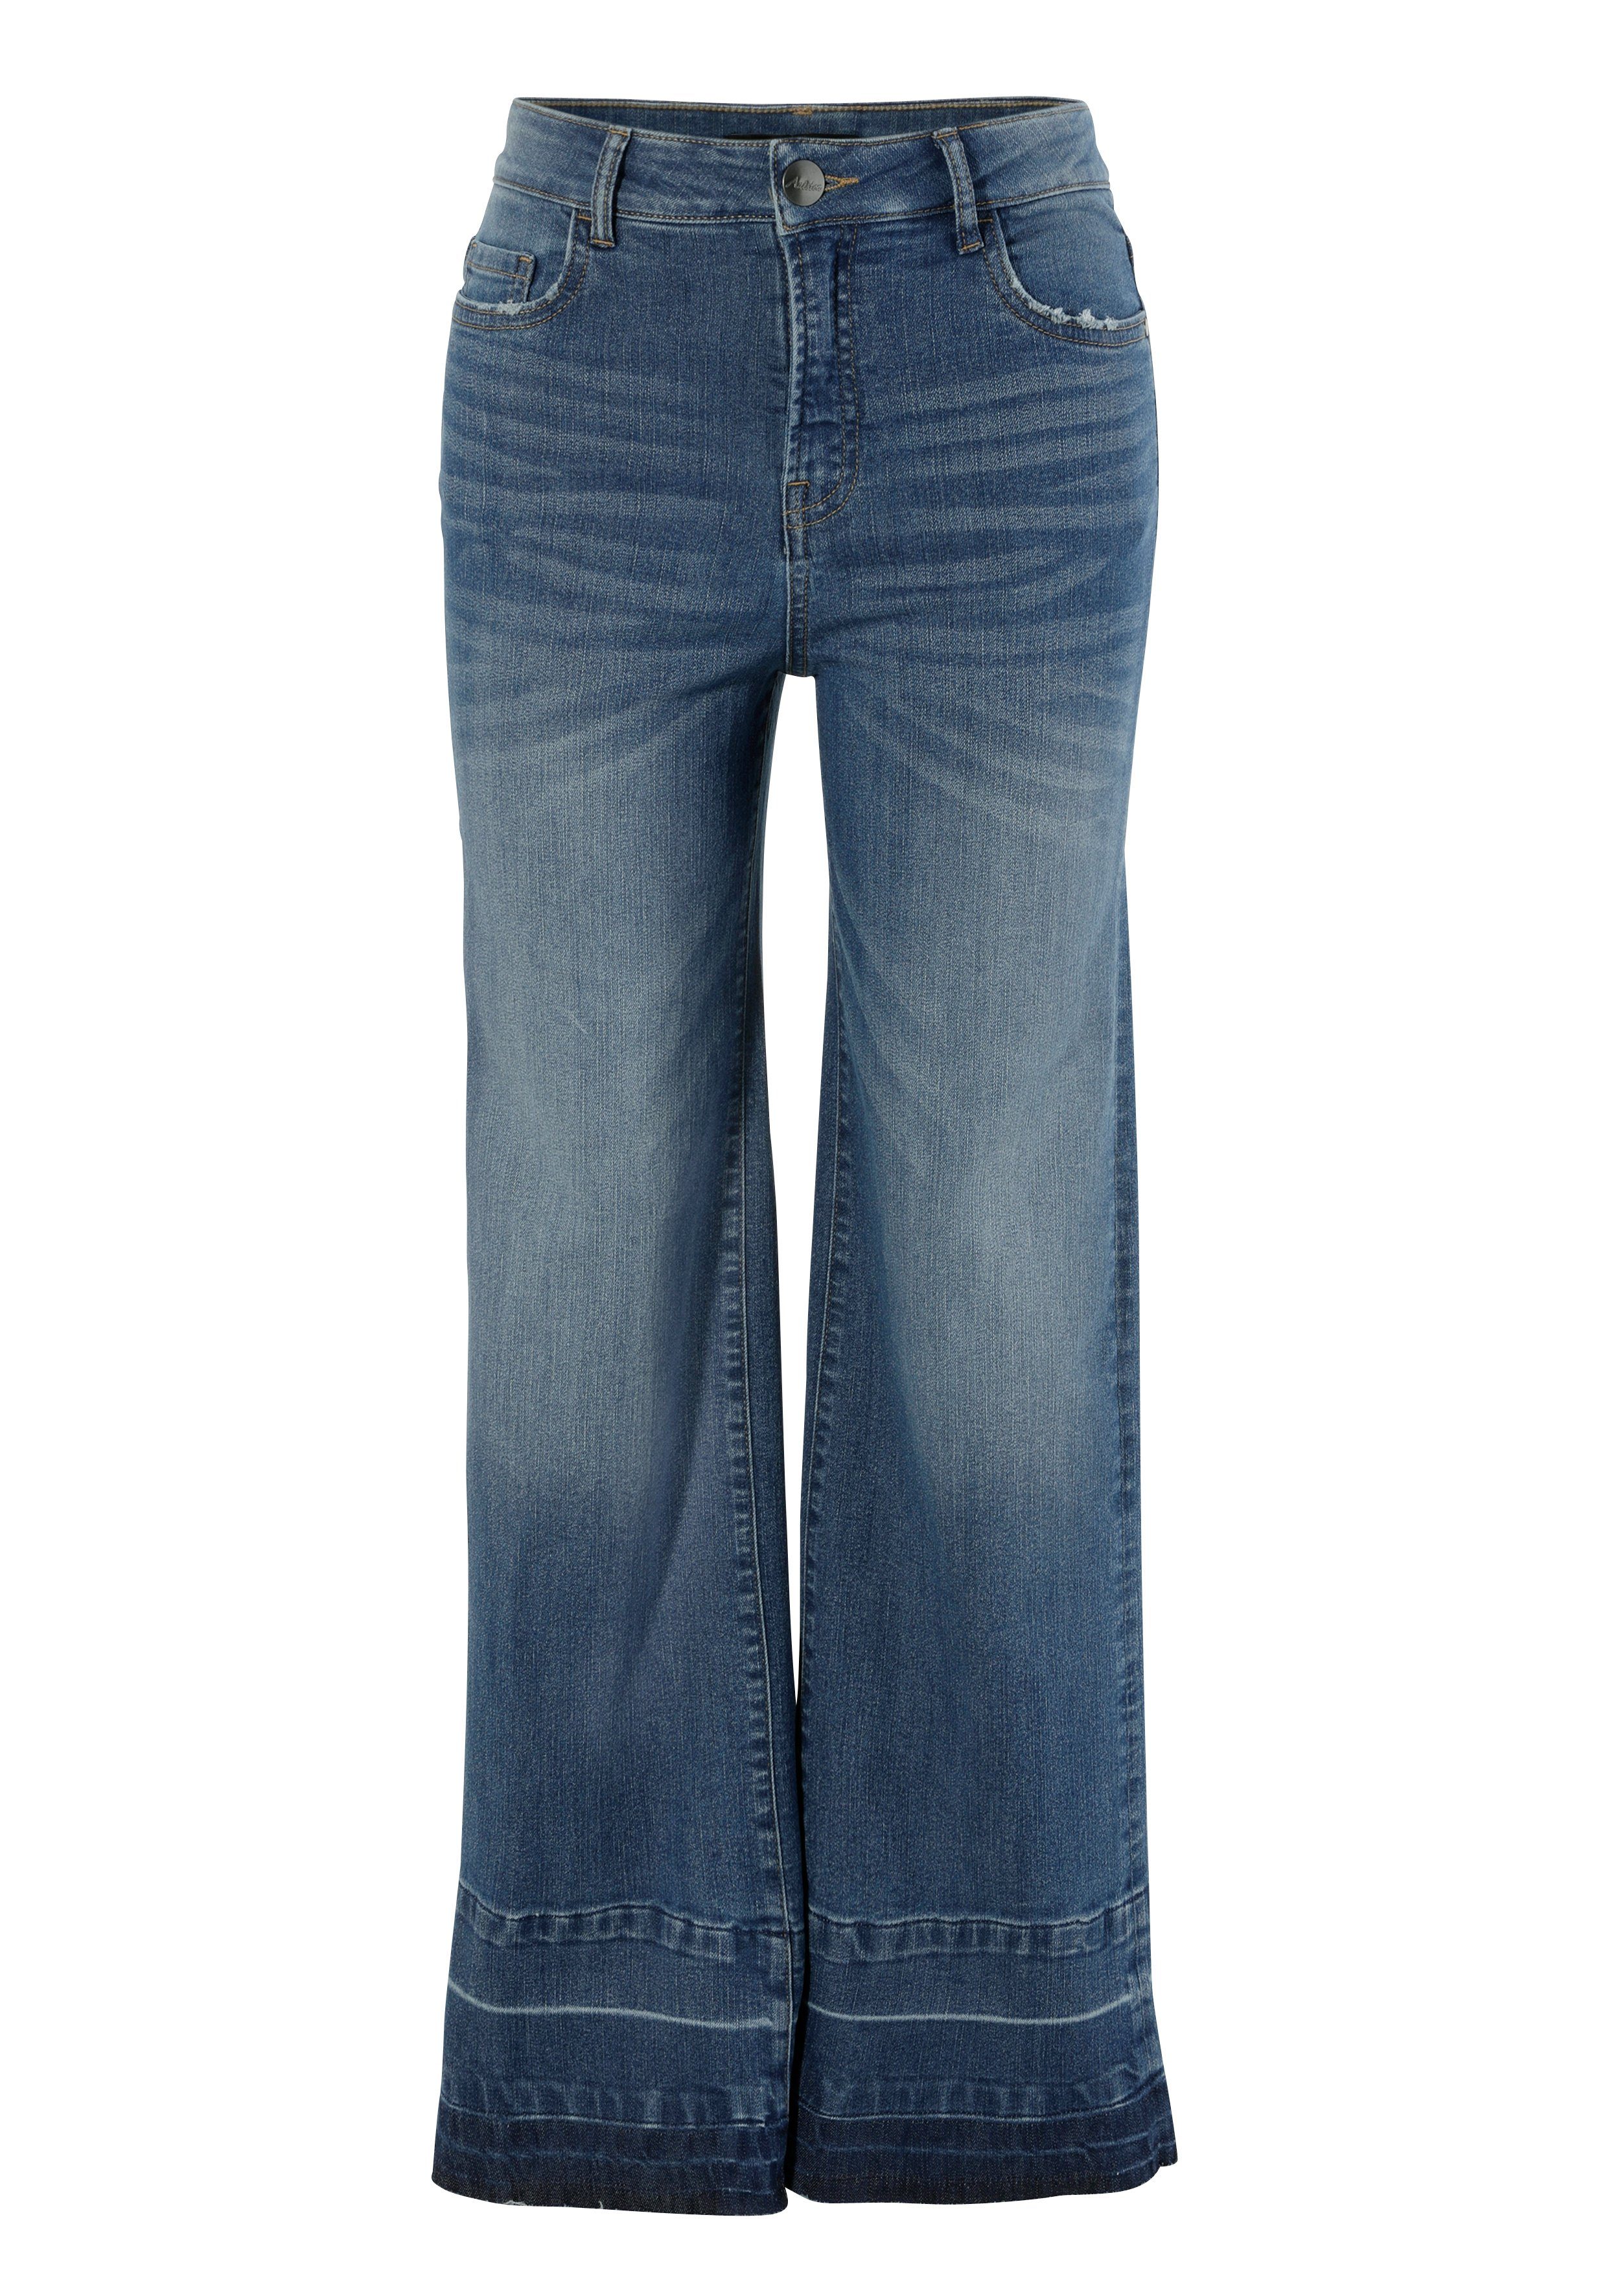 Aniston CASUAL Straight-Jeans used trendiger am Saum Waschung blue mit leicht ausgefranstem dark